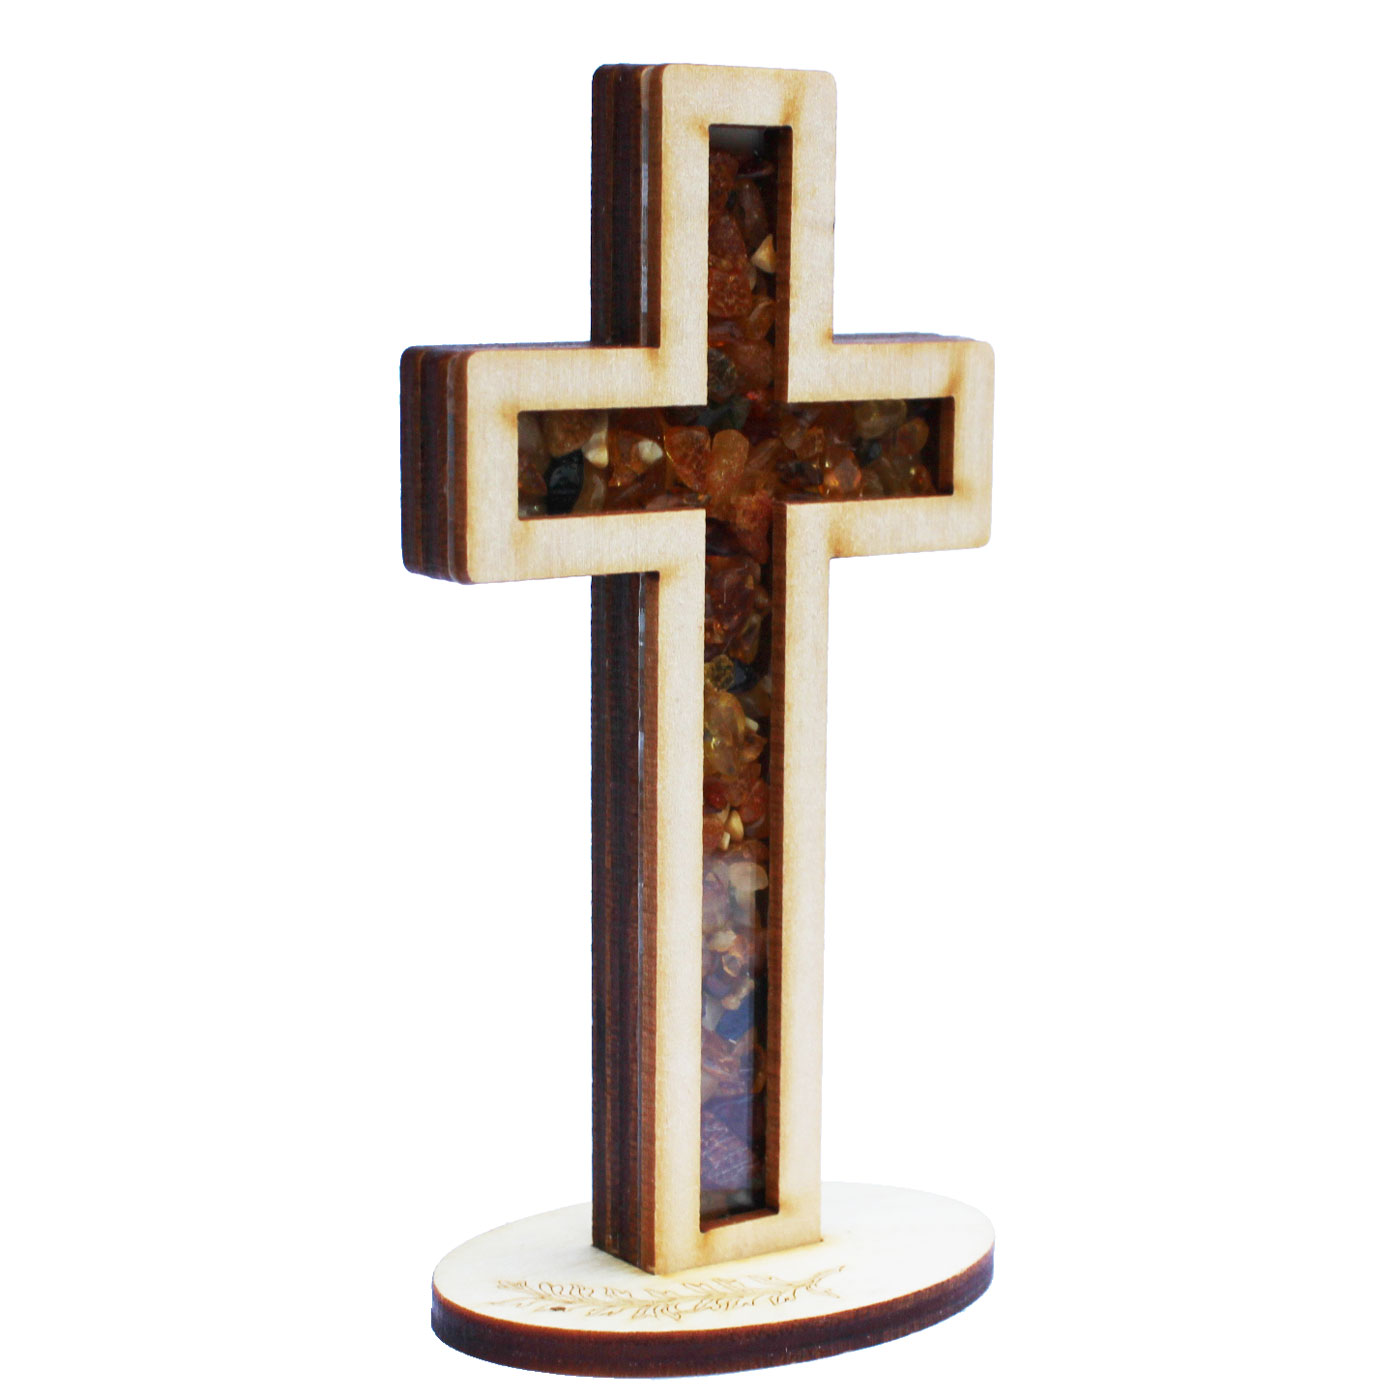 Amber Cross Ornament